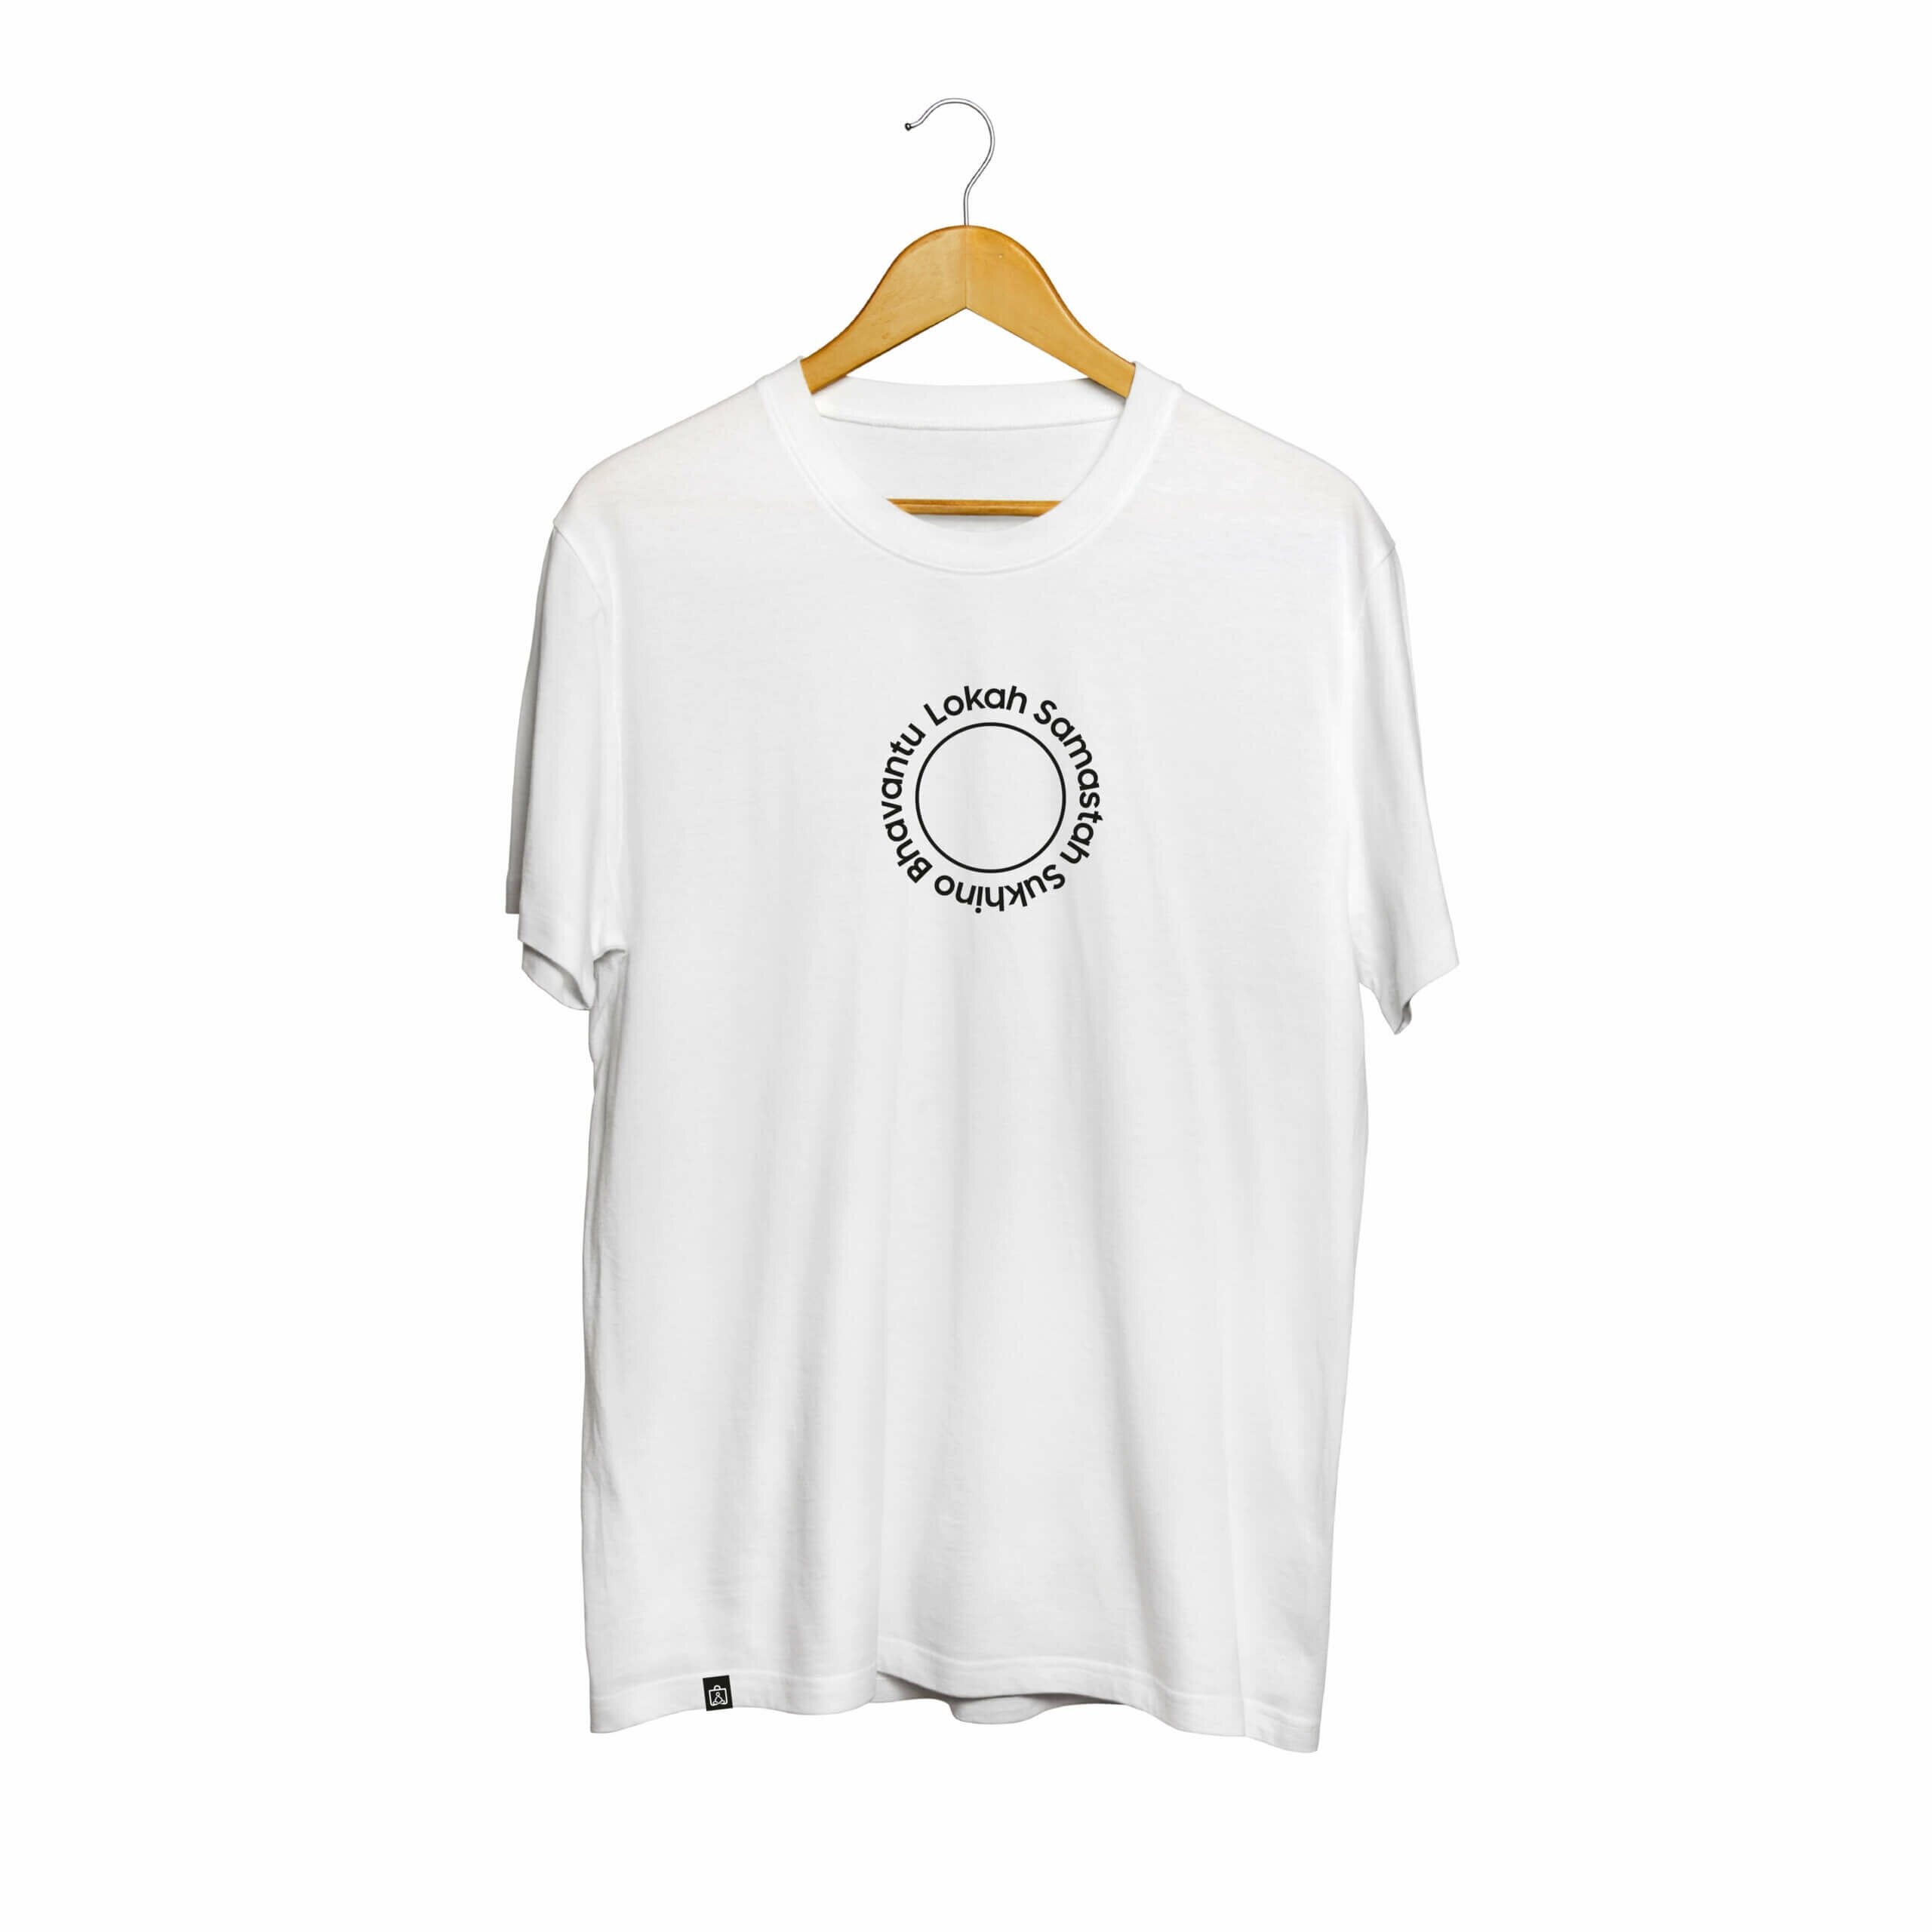 Camiseta Yogateria 5